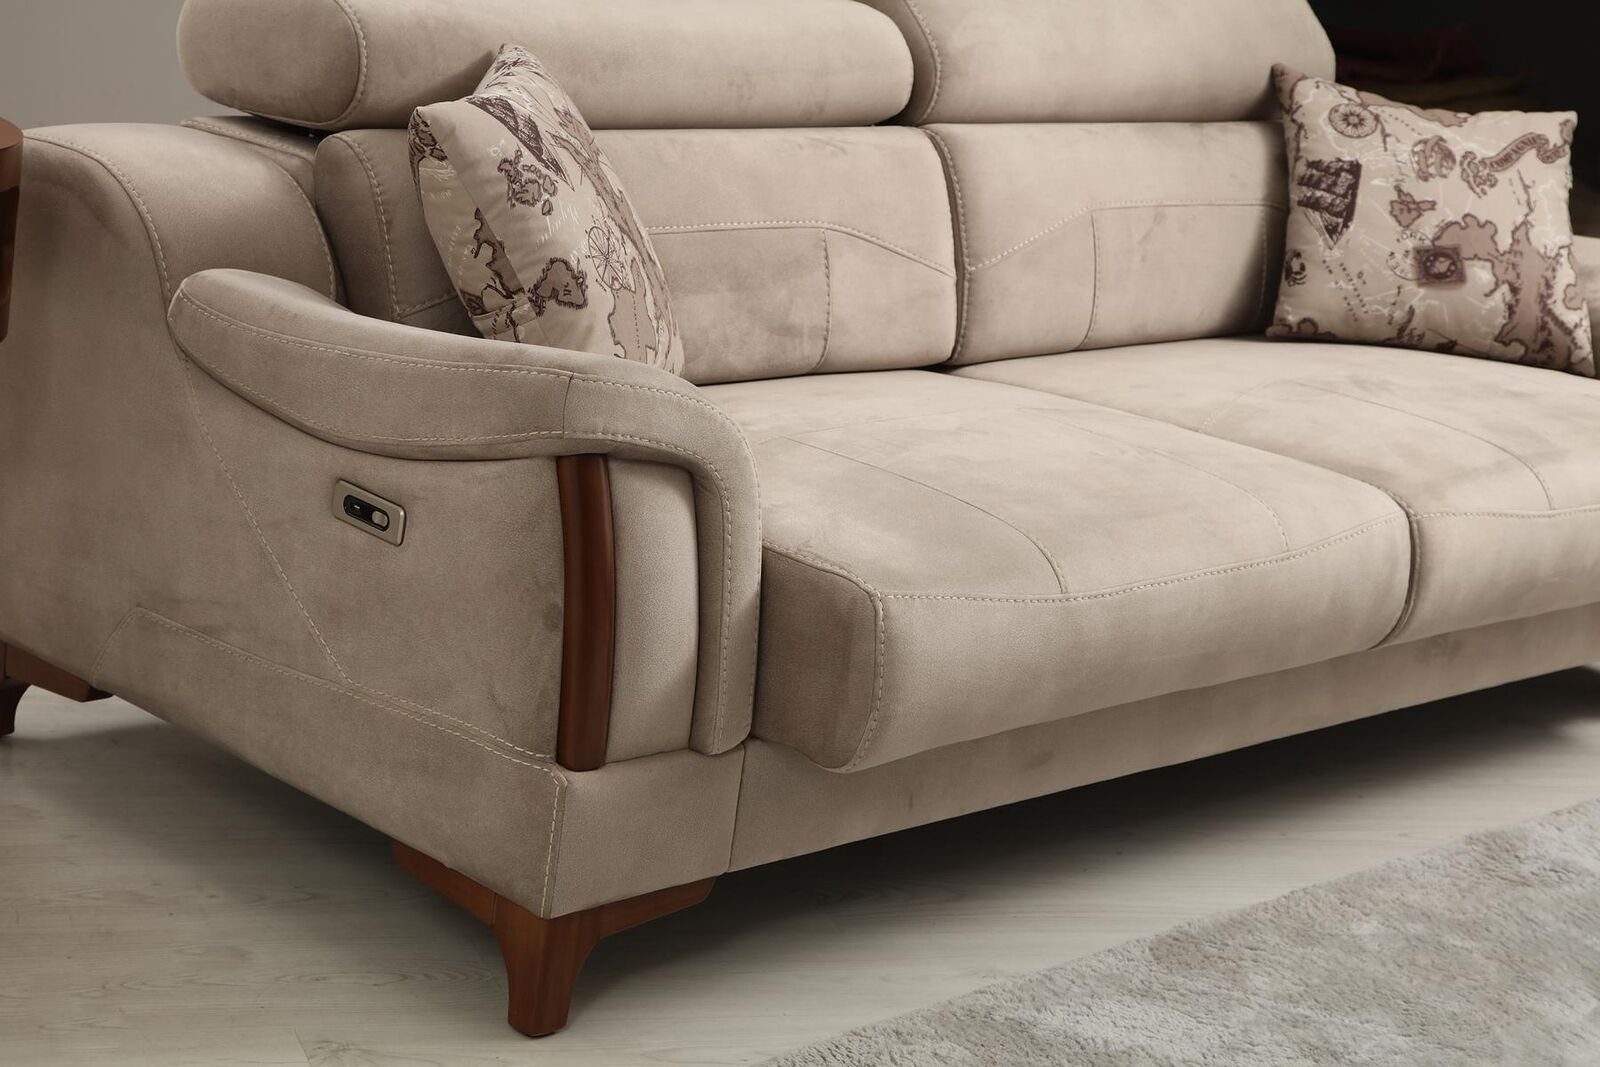 JVmoebel 3-Sitzer Sofa Teile, Möbel in Made Textil, Polster Modern Europa 1 Designer Wohnzimmer